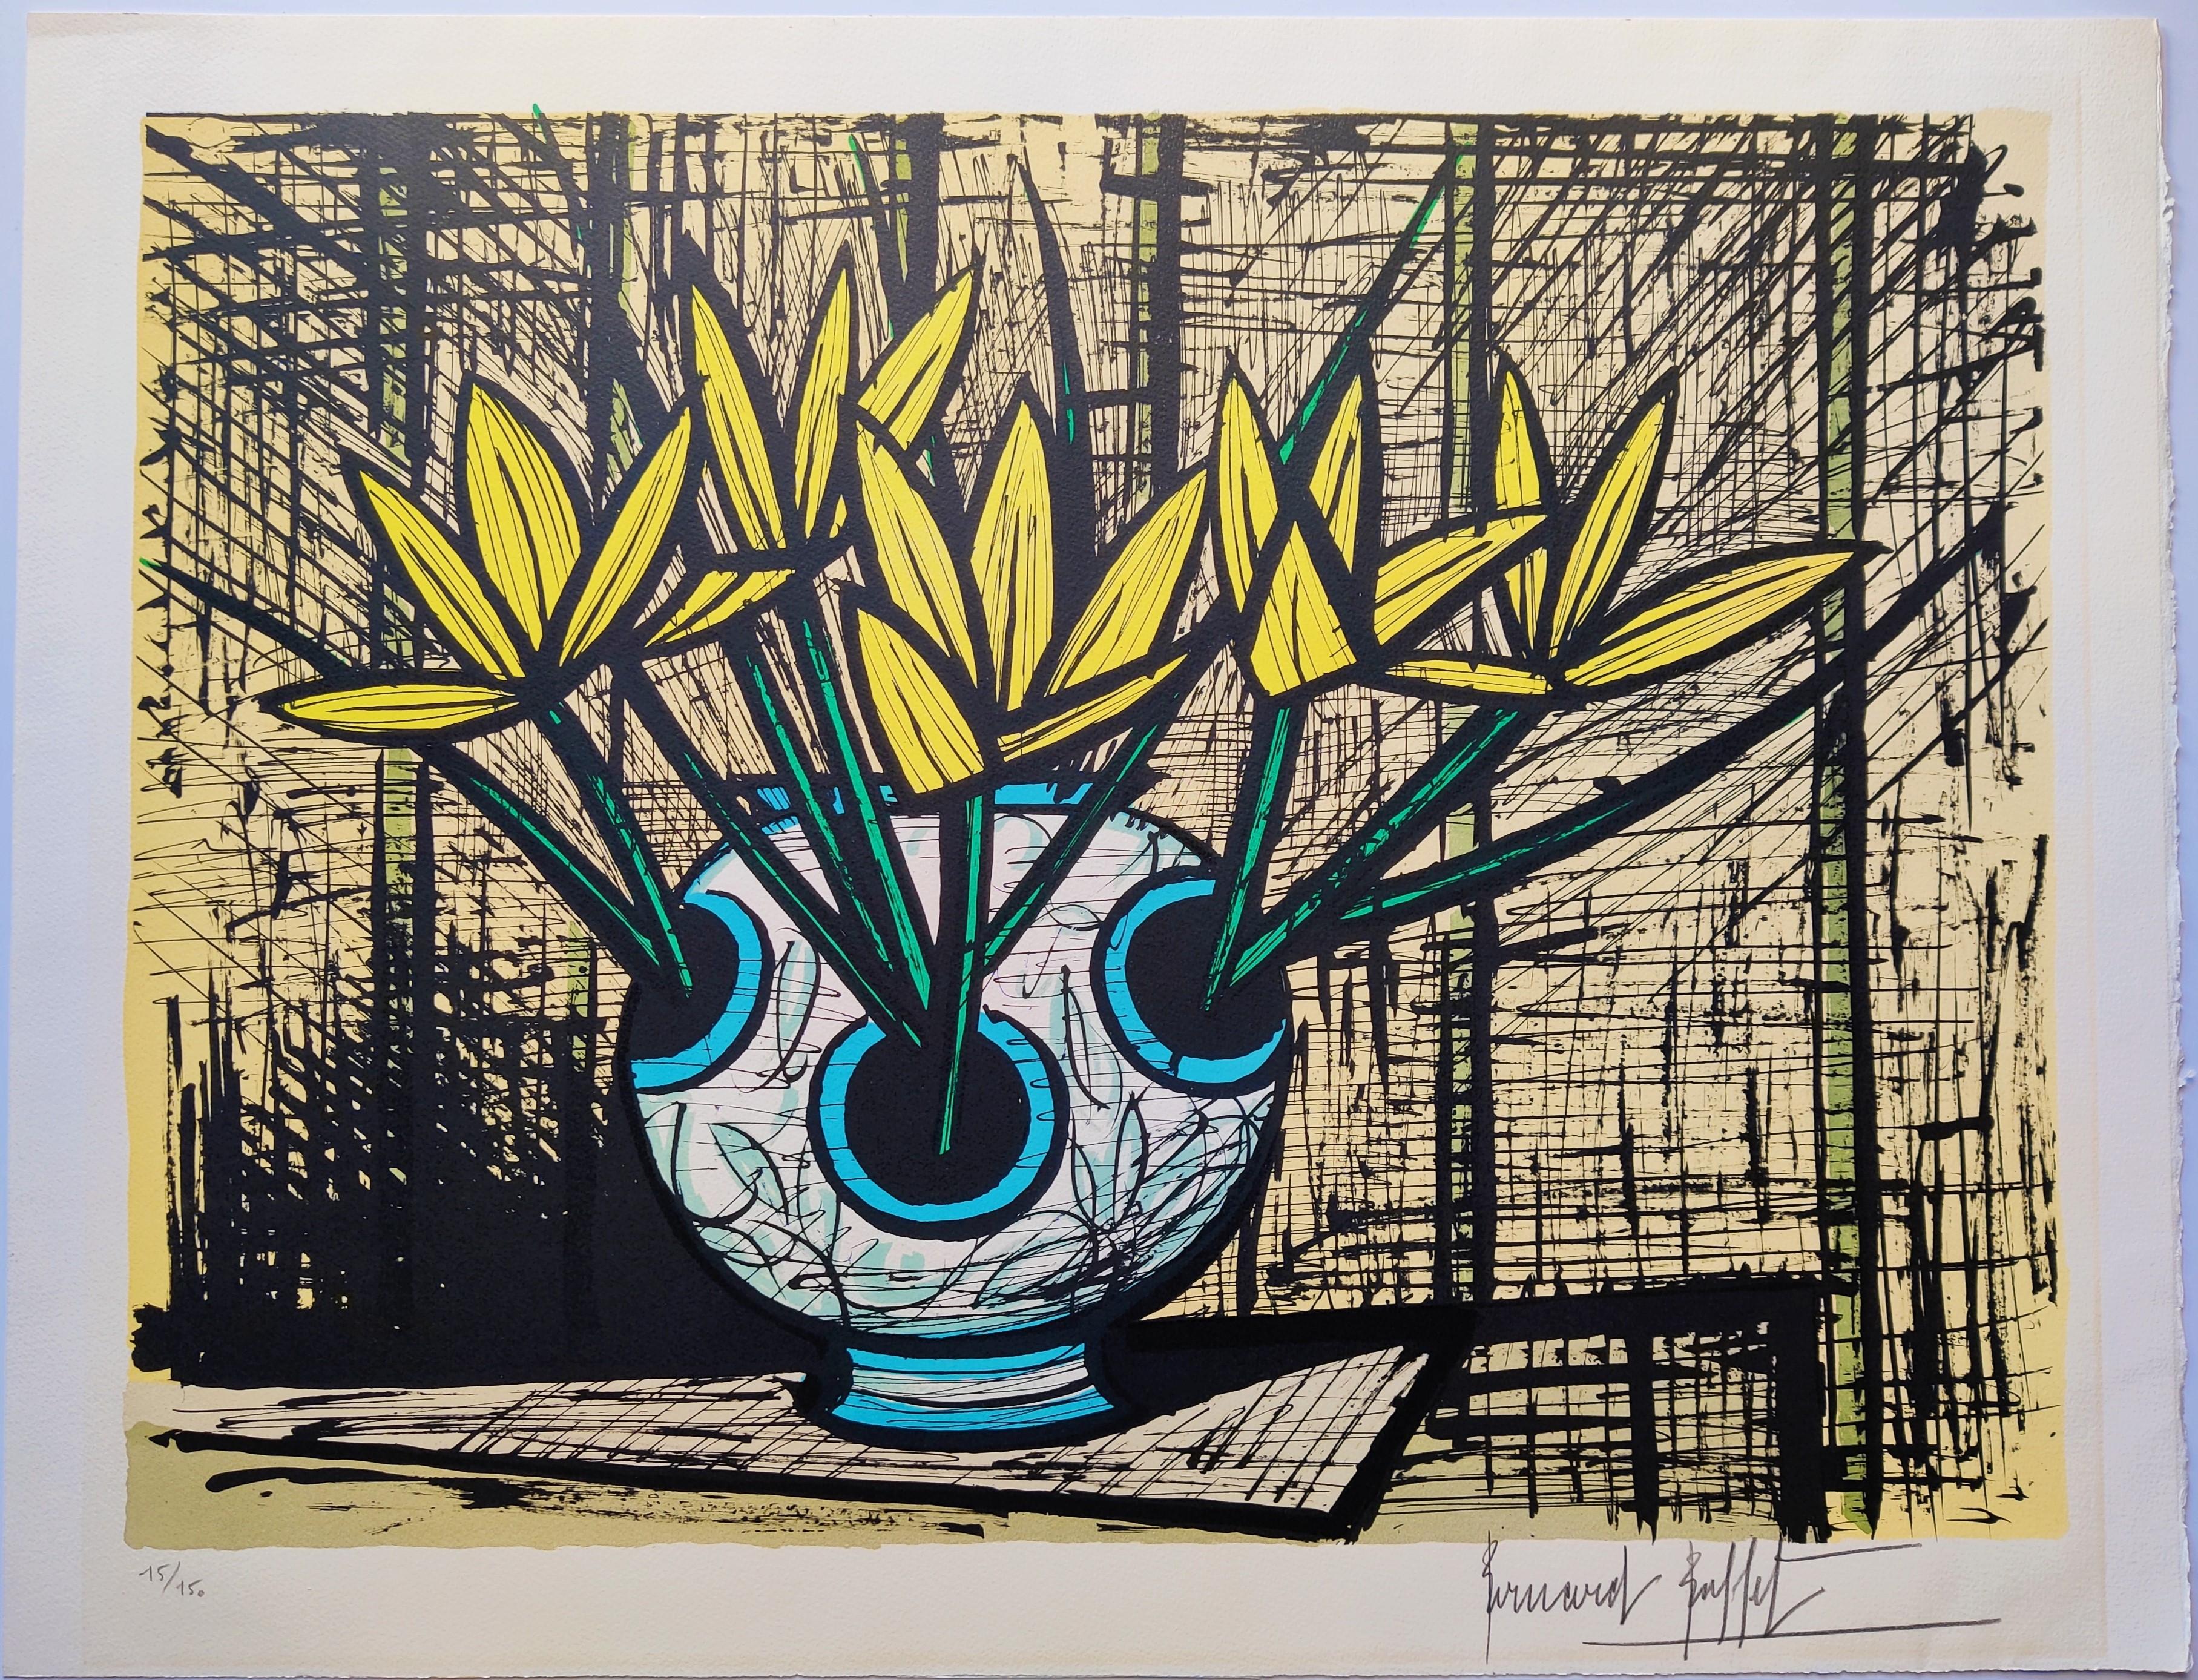 Bernard Buffet
Krokus jaunes, 1987
Lithographie
Handsigniert unten rechts 
Nummeriert 15/150
Bild 67 x 50 cm
Blatt 75 x 58
Die Einrahmung ist eine Option, wird mit einem Aluminiumrahmen, einem säurefreien Passepartout, einer säurefreien Rückseite